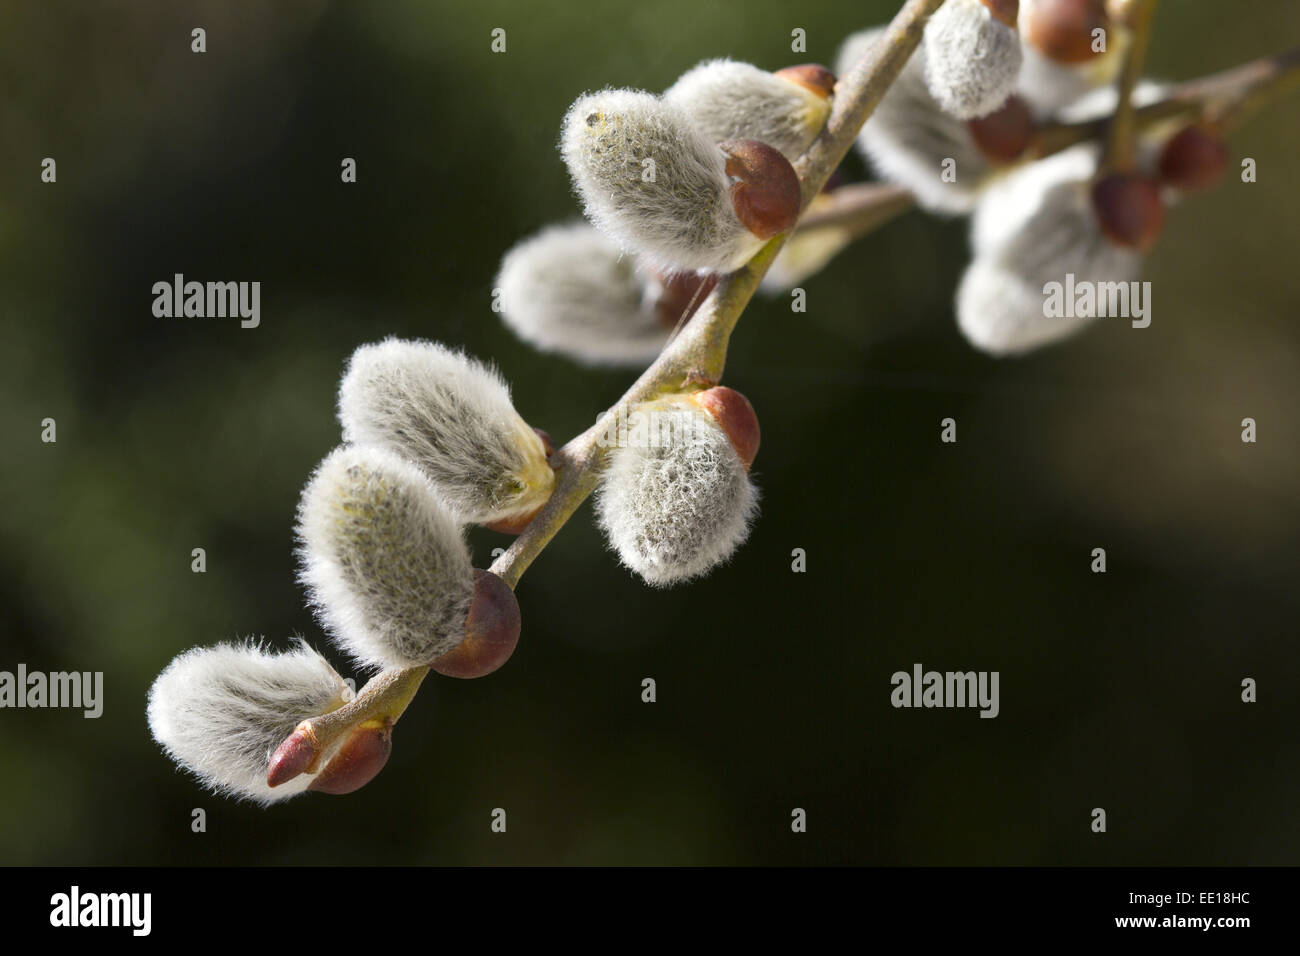 Nahaufnahme von blühenden Weidenkätzchen, Salweide, Salix caprea Stock Photo